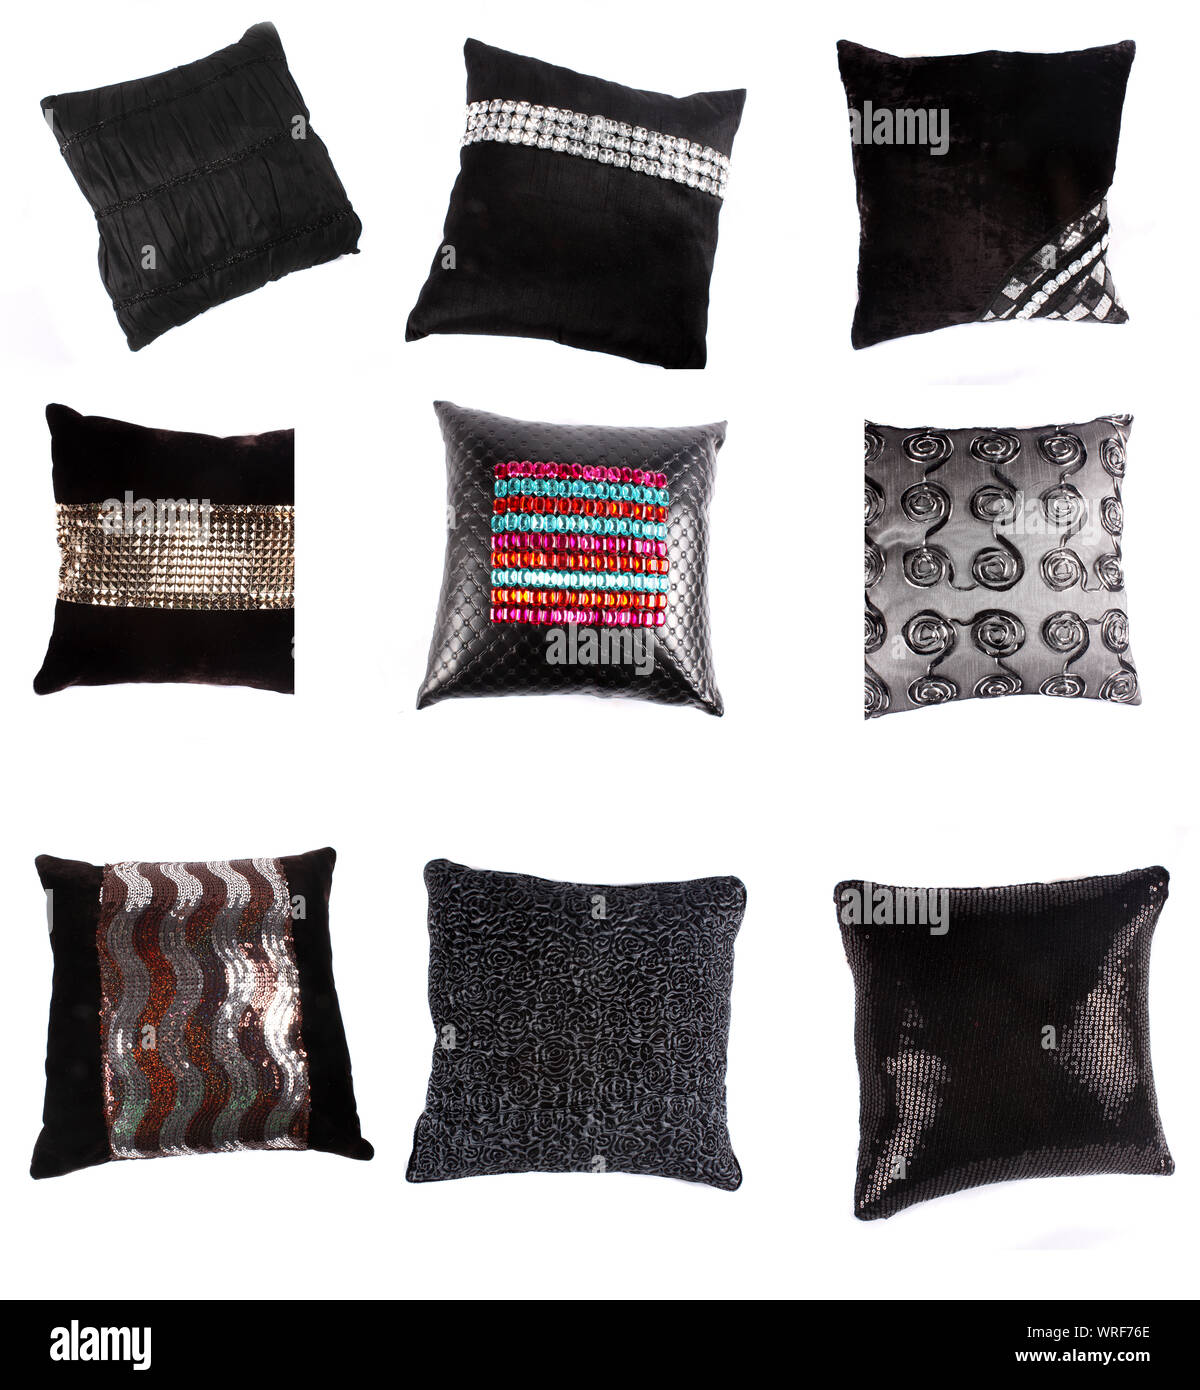 Eine Reihe von luxuriösen Kissen und Polster mit schönen Designs, auf weissem Studiohintergrund. Stockfoto